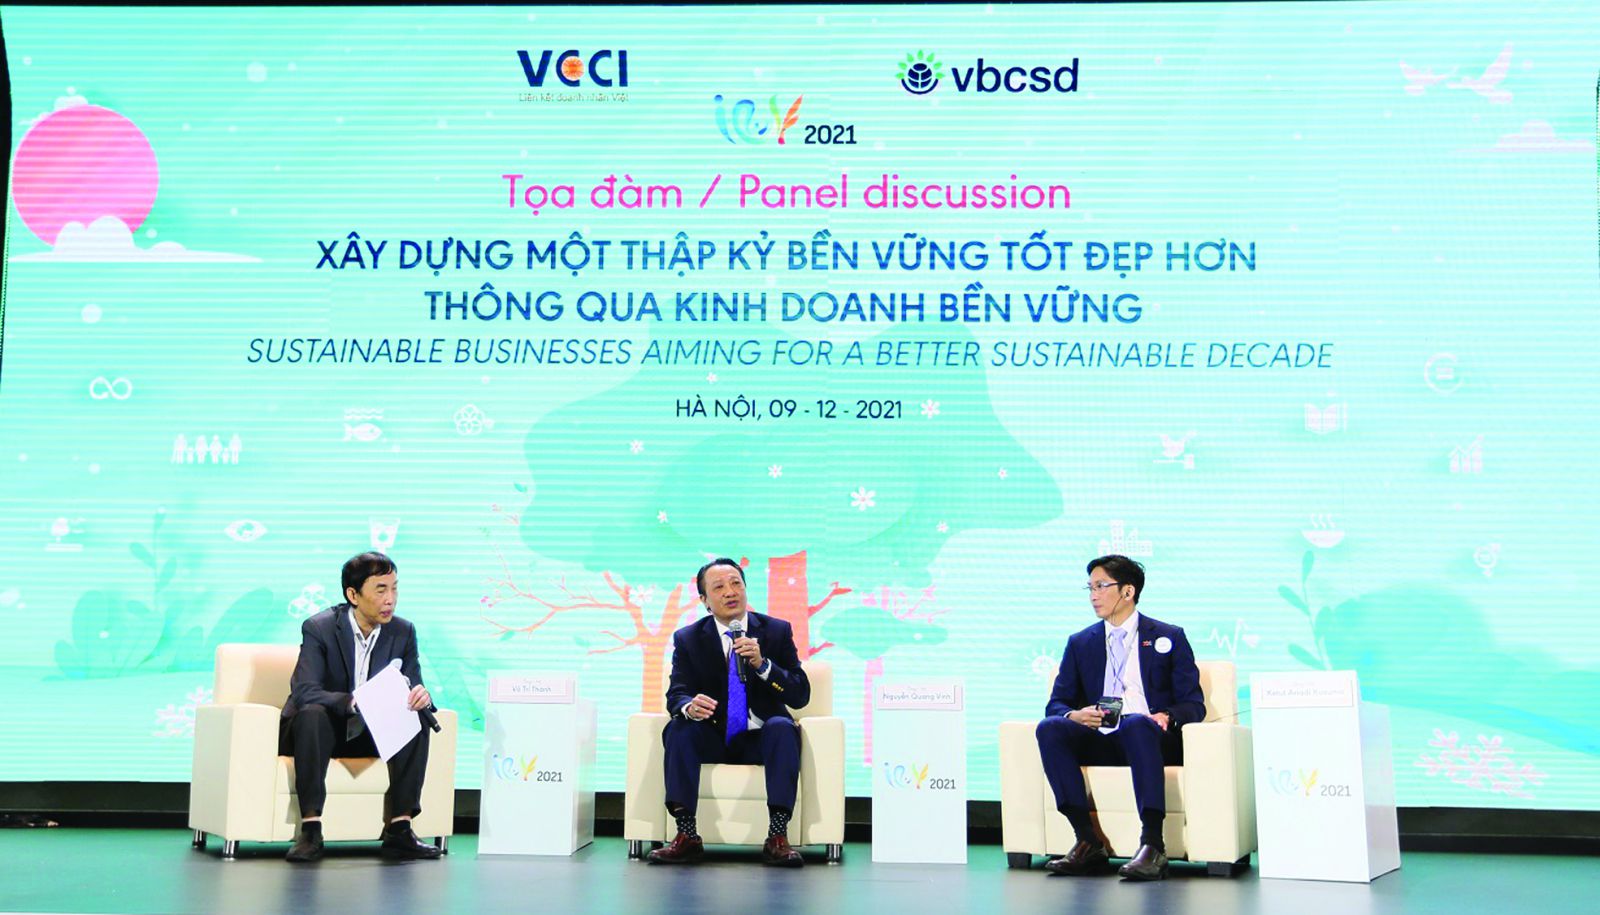 p/Hội đồng Doanh nghiệp vì sự Phát triển bền vững Việt Nam (VBCSD-VCCI) tổ chức Diễn đàn Doanh nghiệp Phát triển bền vững Việt Nam với chủ đề “Hướng tới thập kỷ phát triển bền vững tốt đẹp hơn: Không để ai bị bỏ lại phía sau”